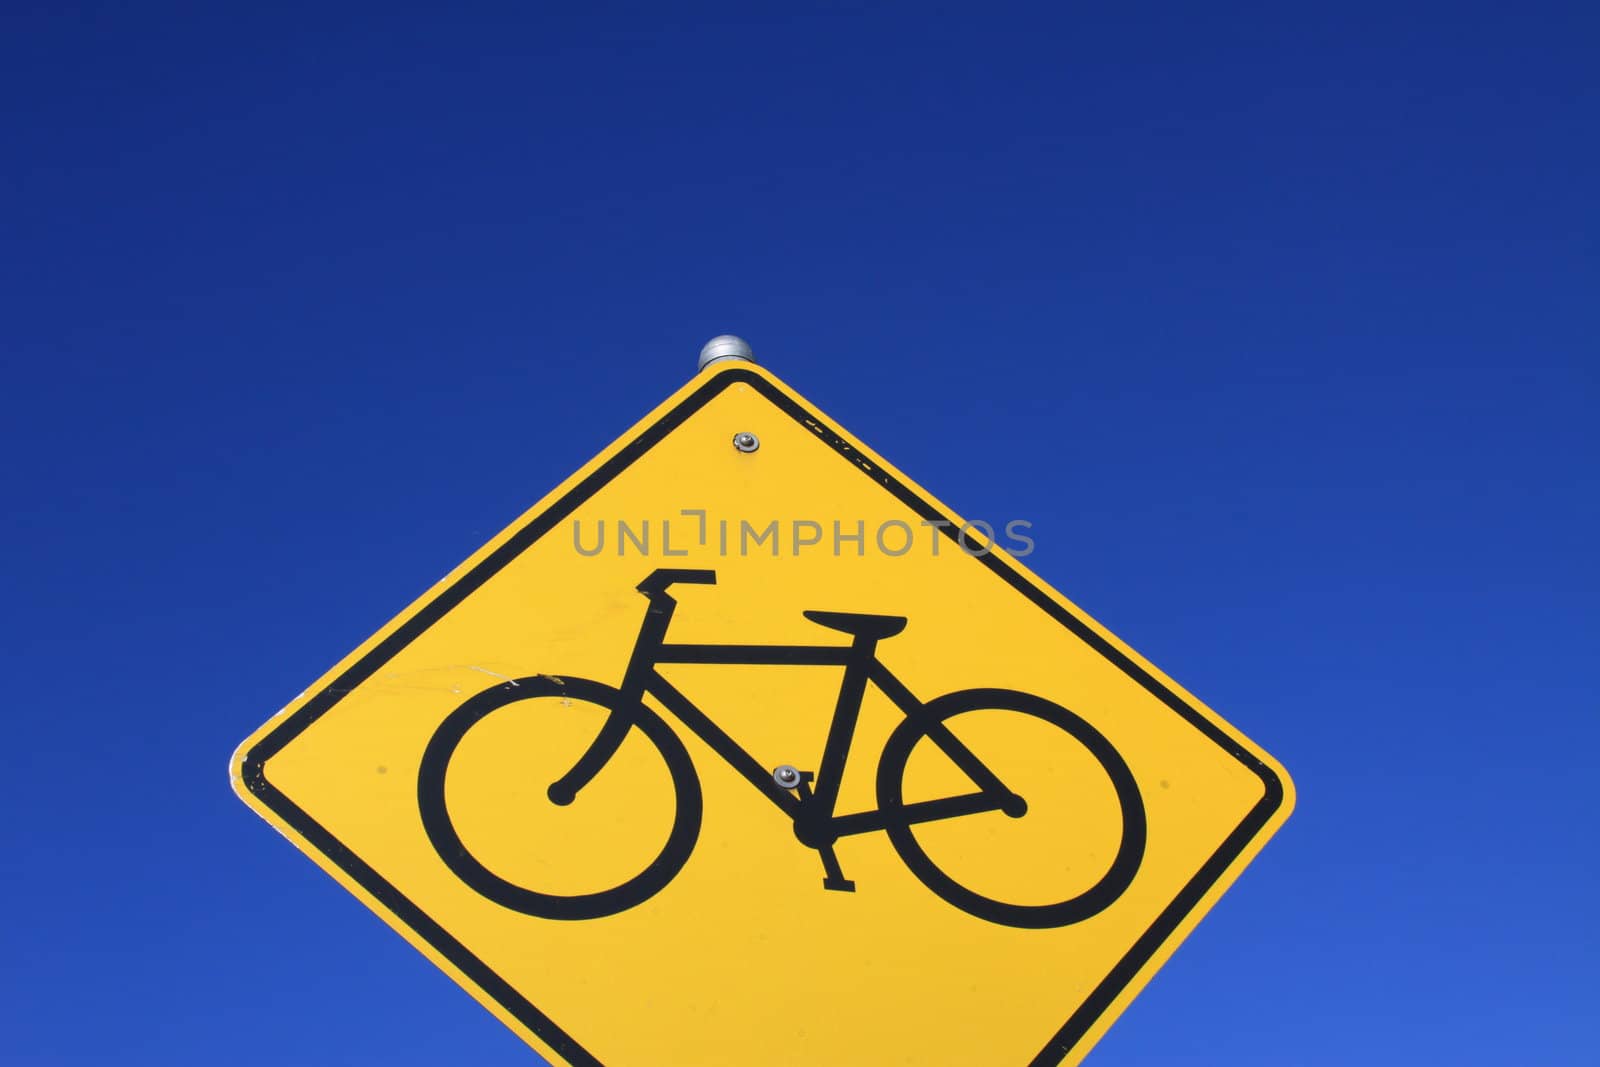 Bike Lane Road Sign by MichaelFelix